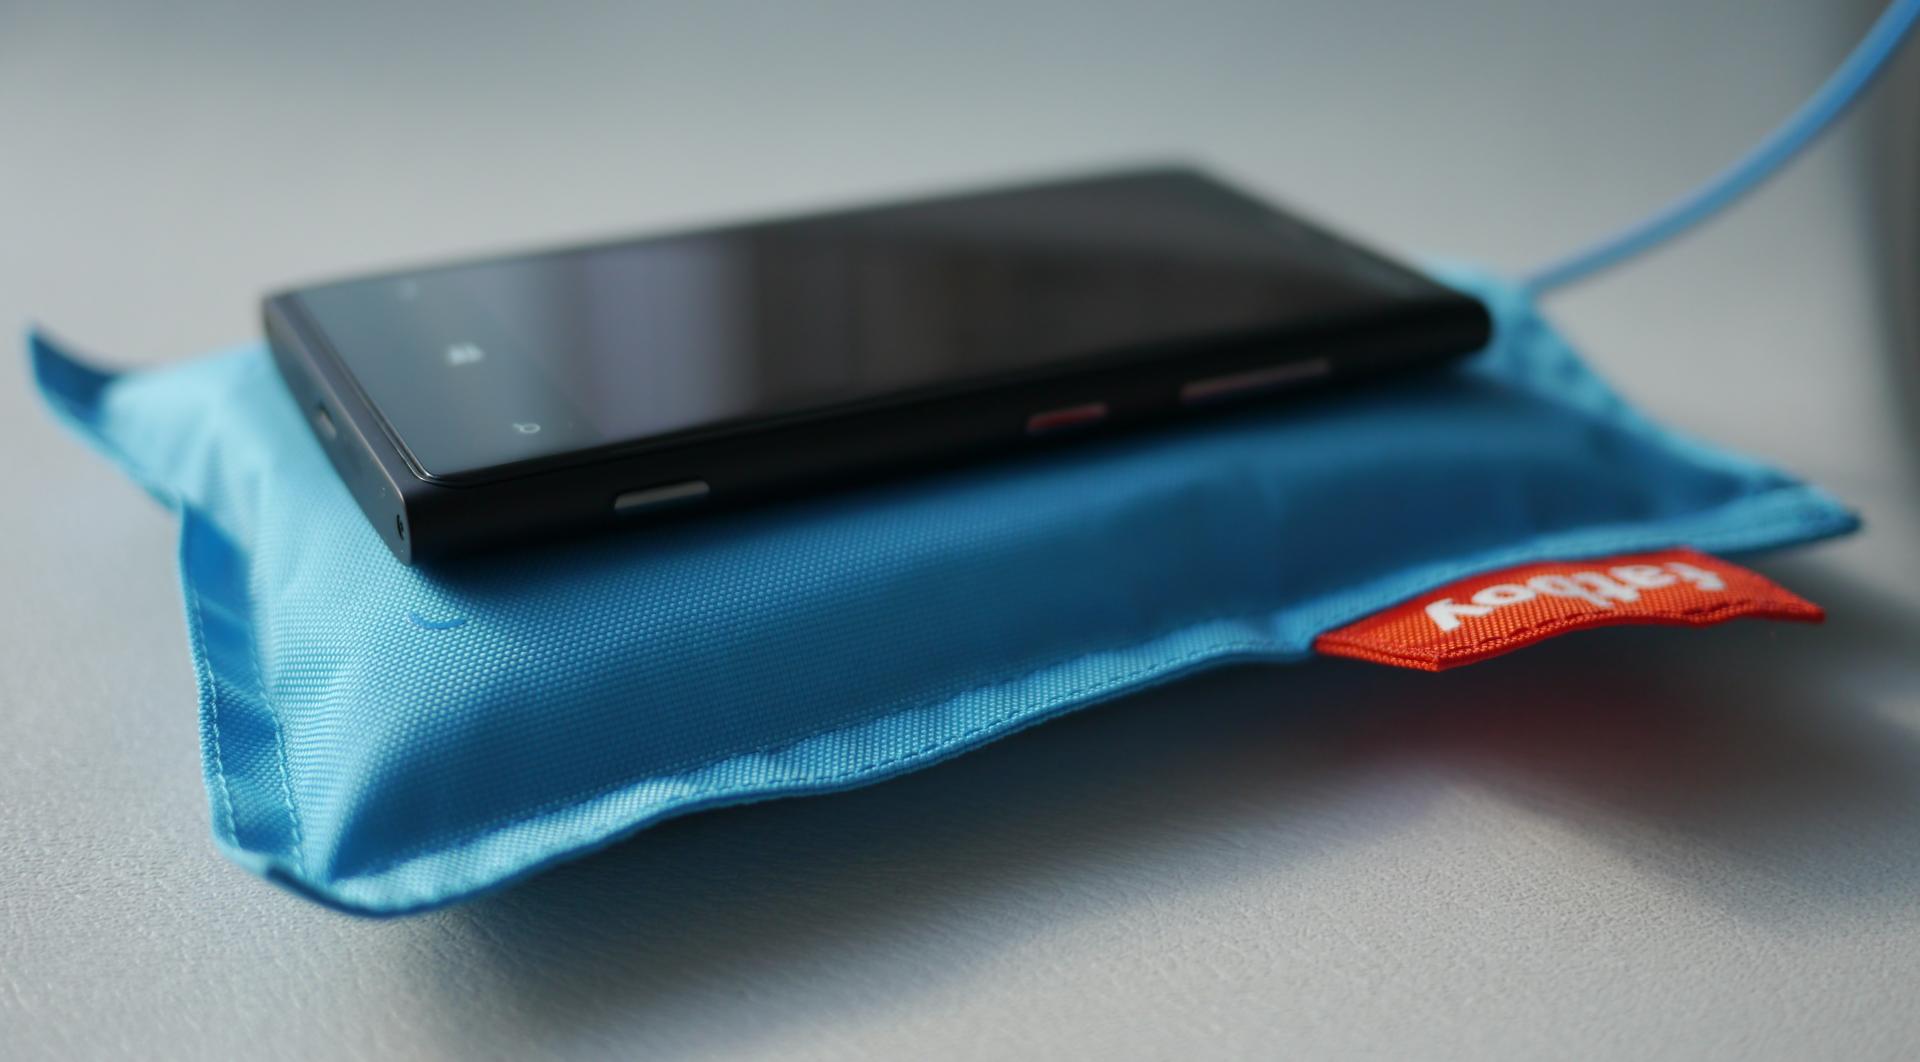 Le chargeur USB de l'iPhone 6 pourrait être renouvelé (photo)